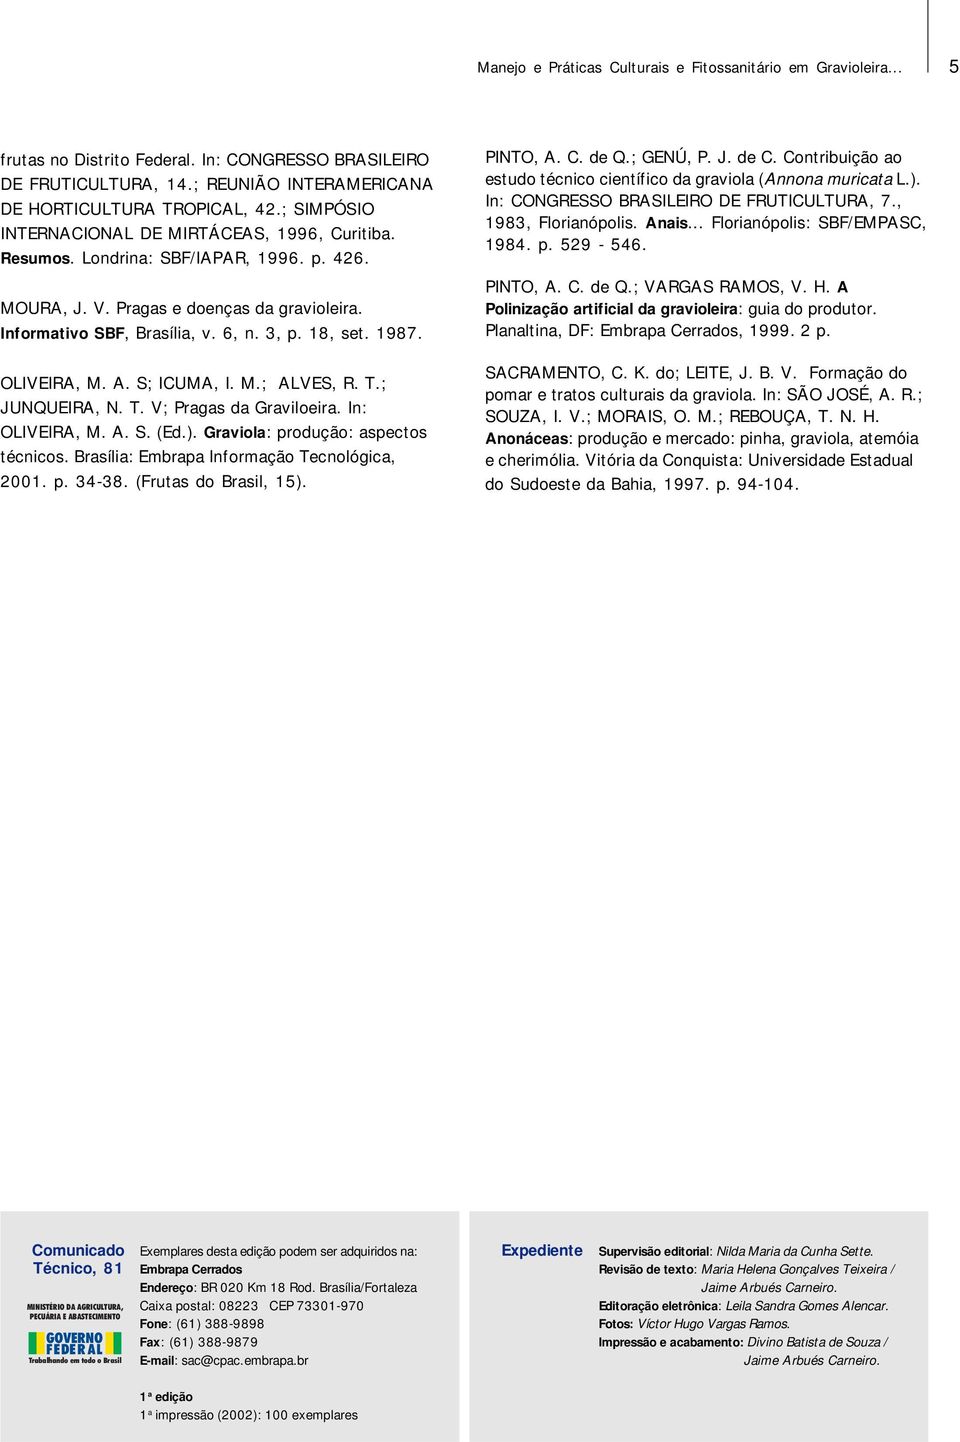 1987. OLIVEIRA, M. A. S; ICUMA, I. M.; ALVES, R. T.; JUNQUEIRA, N. T. V; Pragas da Graviloeira. In: OLIVEIRA, M. A. S. (Ed.). Graviola: produção: aspectos técnicos.